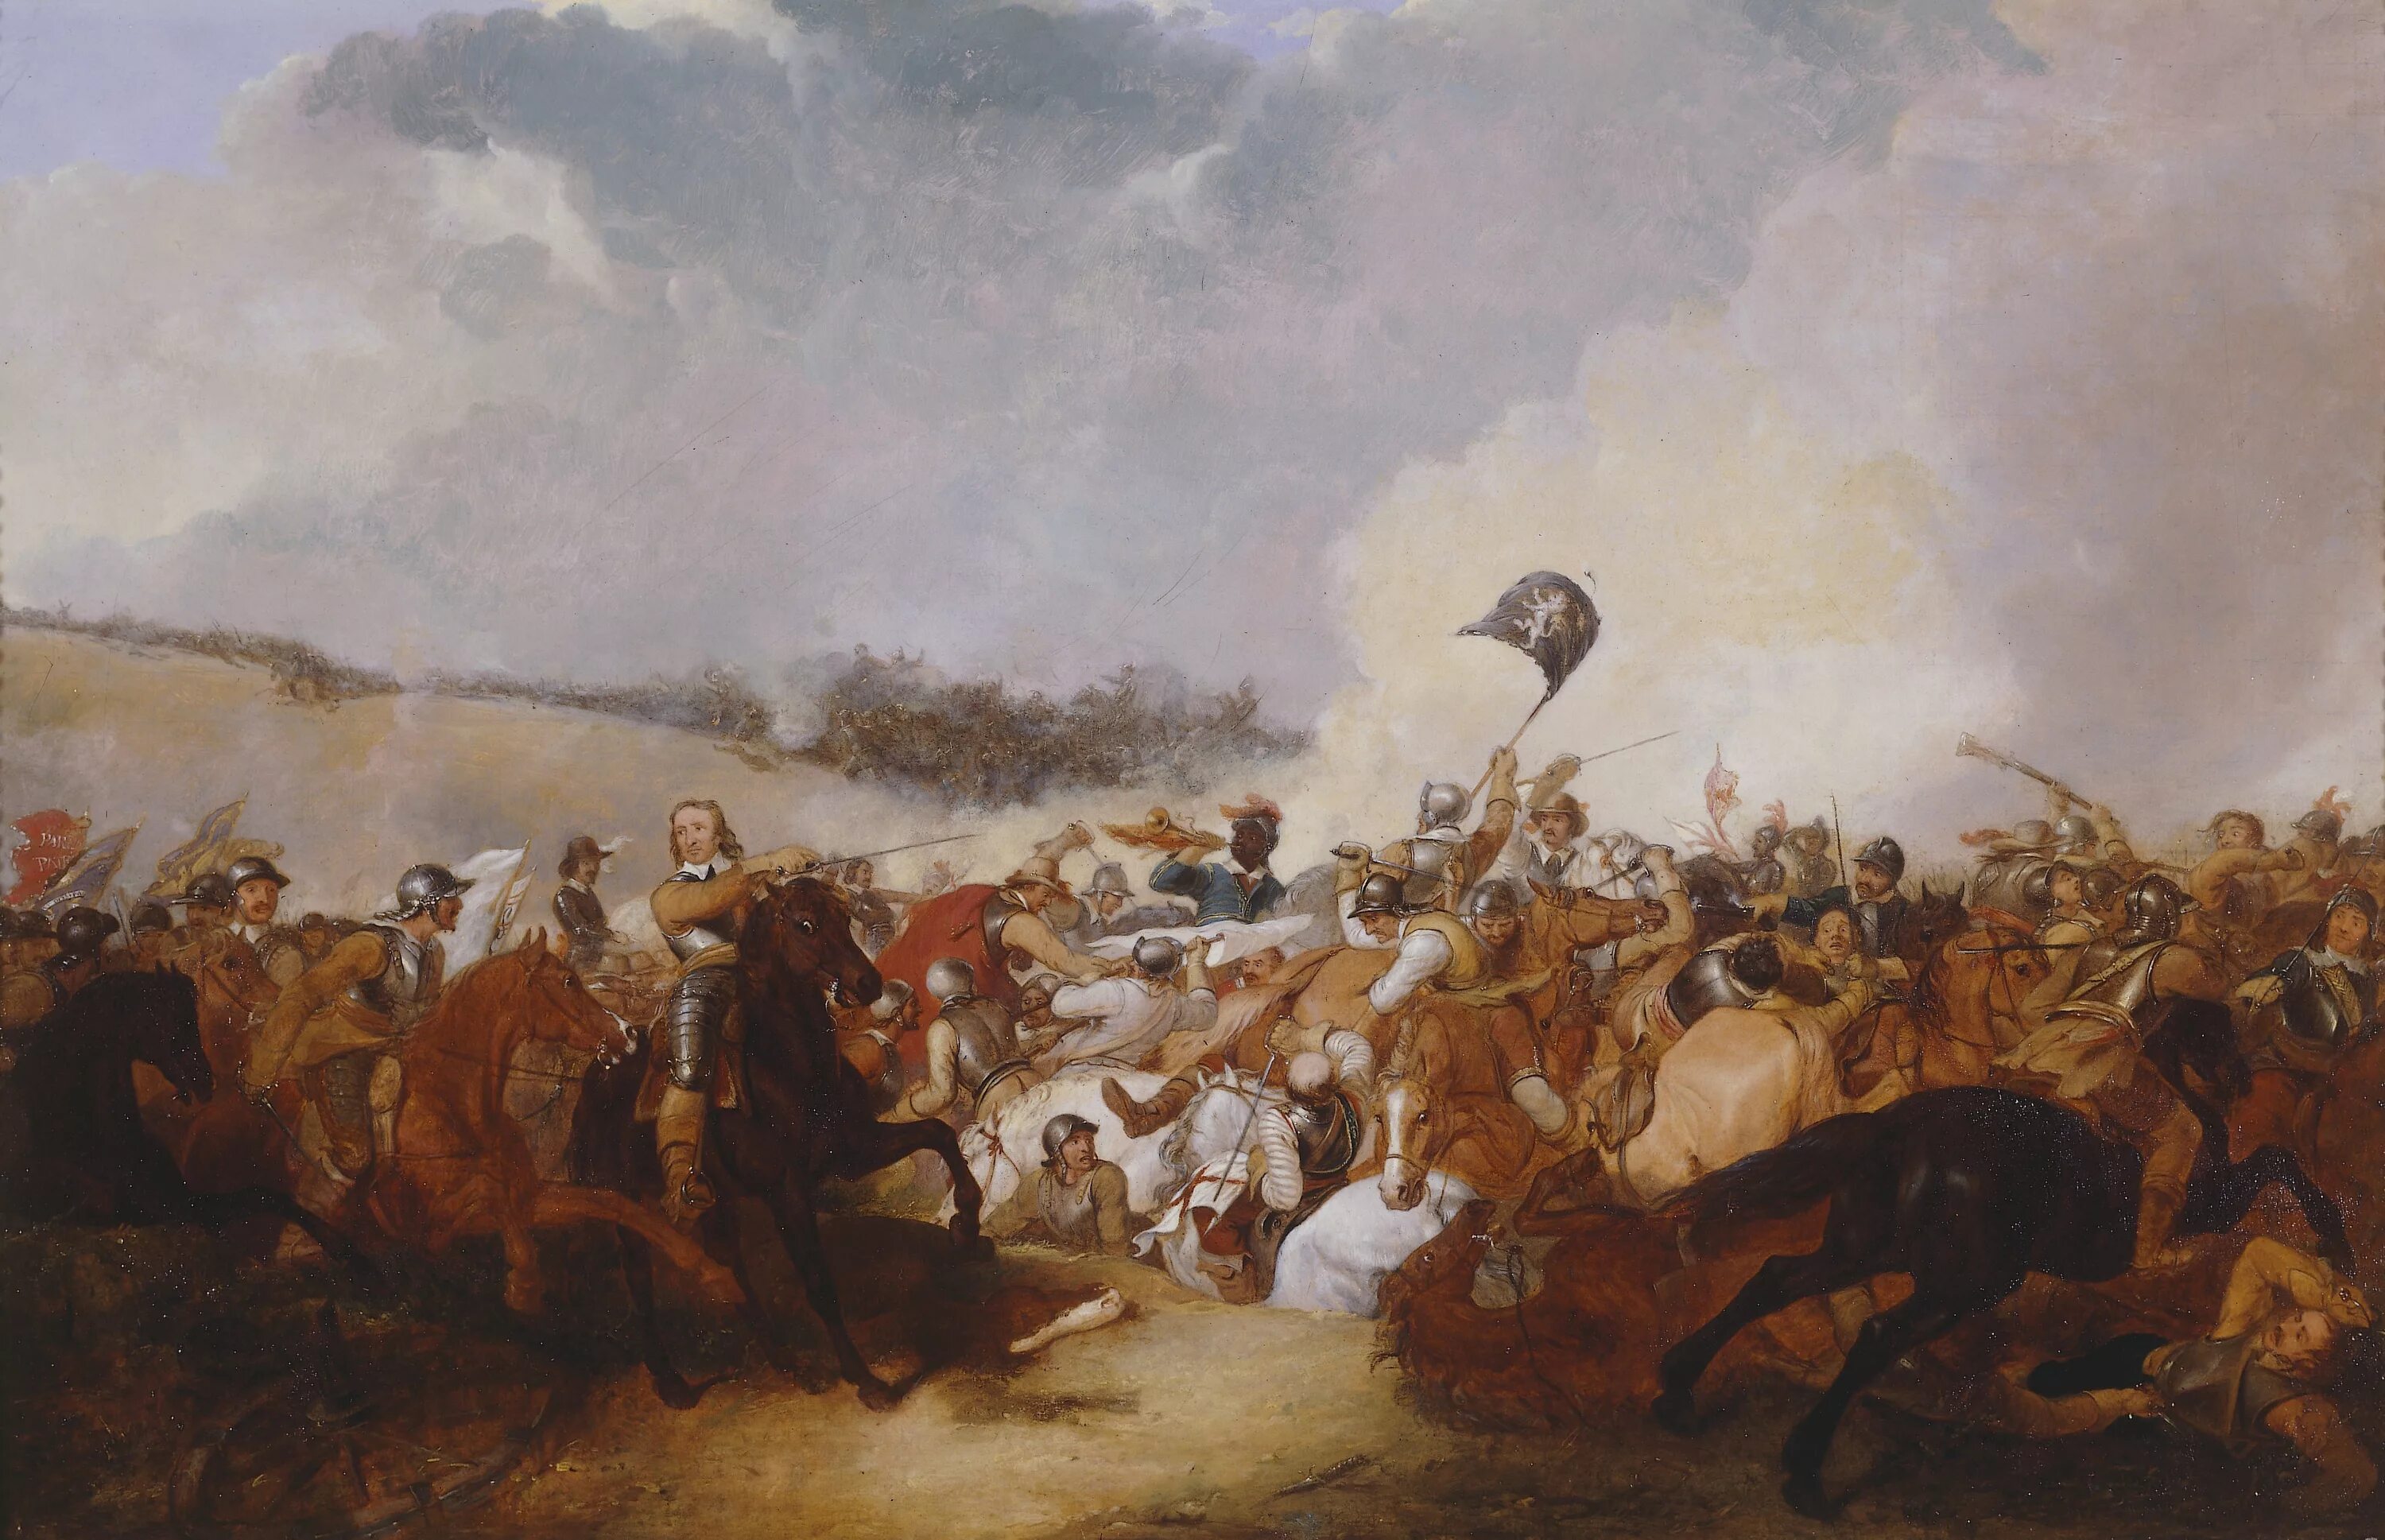 Первые революции в англии. Оливер Кромвель битва при Нейзби. Оливер Кромвель битва при Данбаре. Оливер Кромвель в битве при Марстон-Муре. Сражение при Нейзби в Англии 1645.